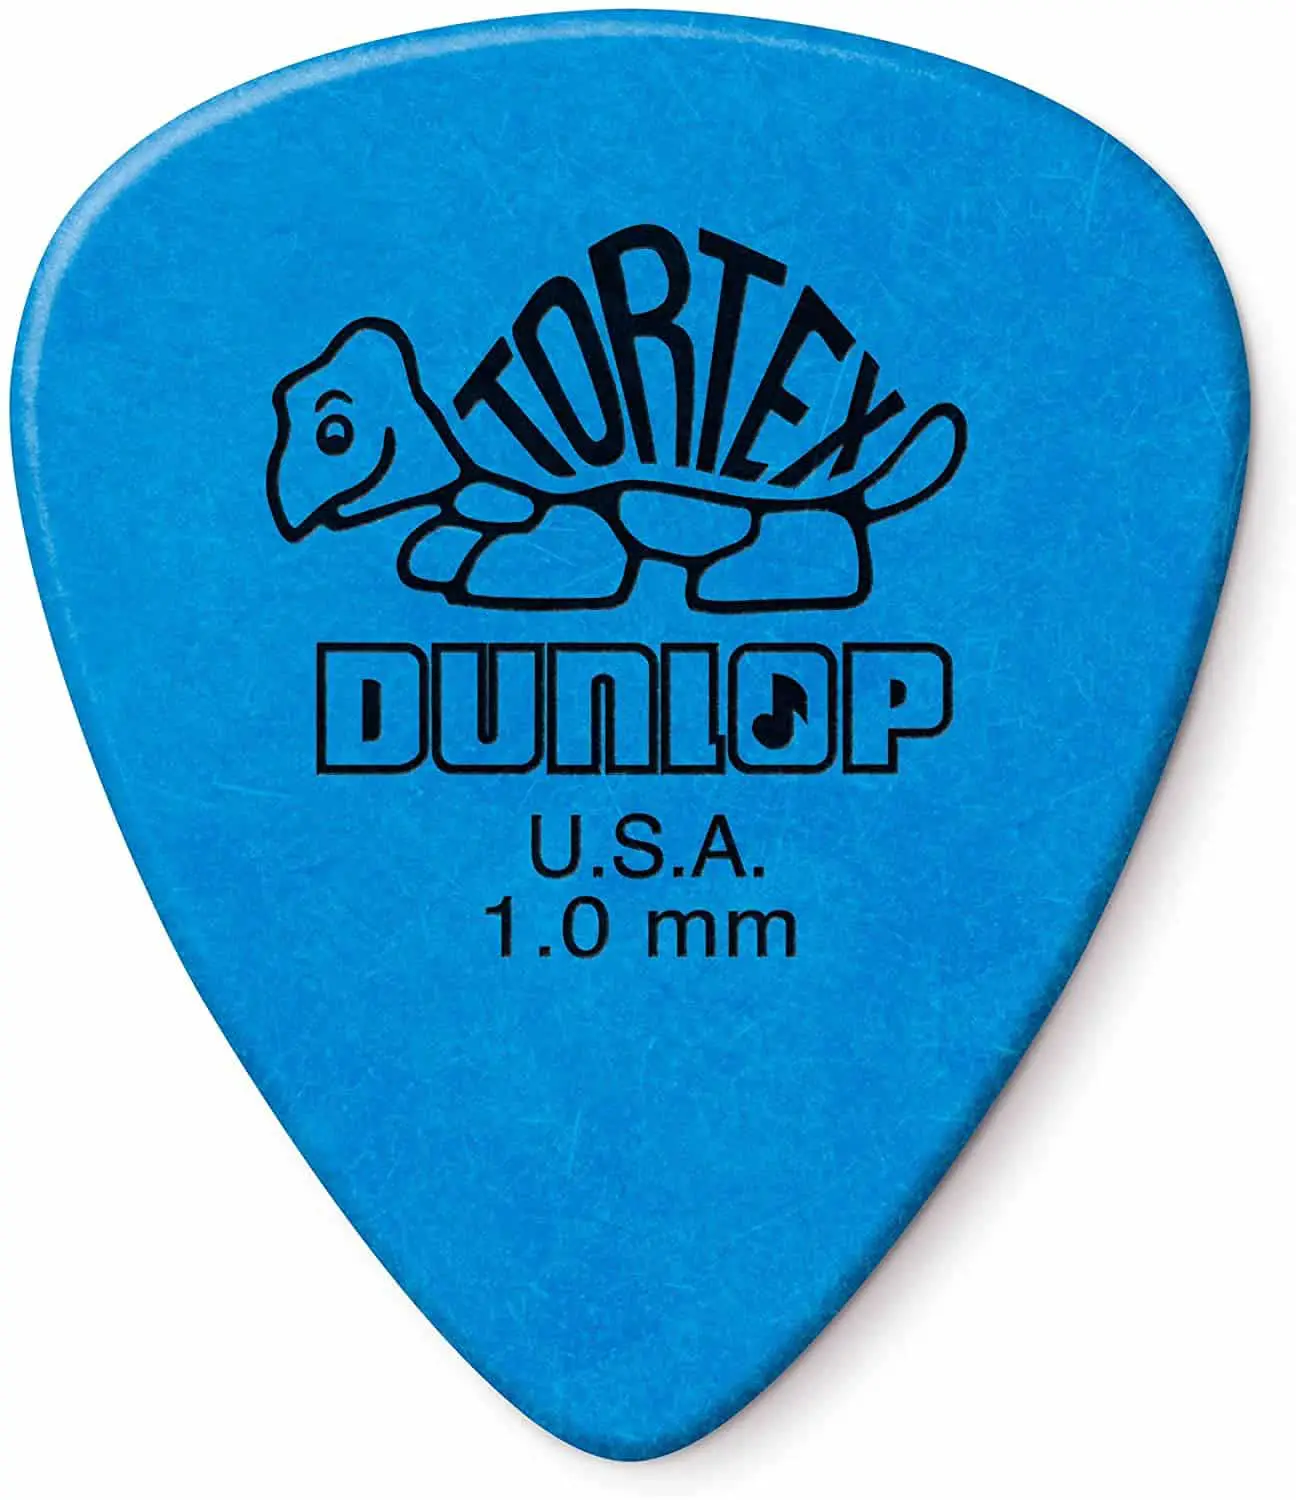 Các loại chọn được sử dụng nhiều nhất bởi những người chọn hỗn hợp: Dunlop Tortex 1.0mm